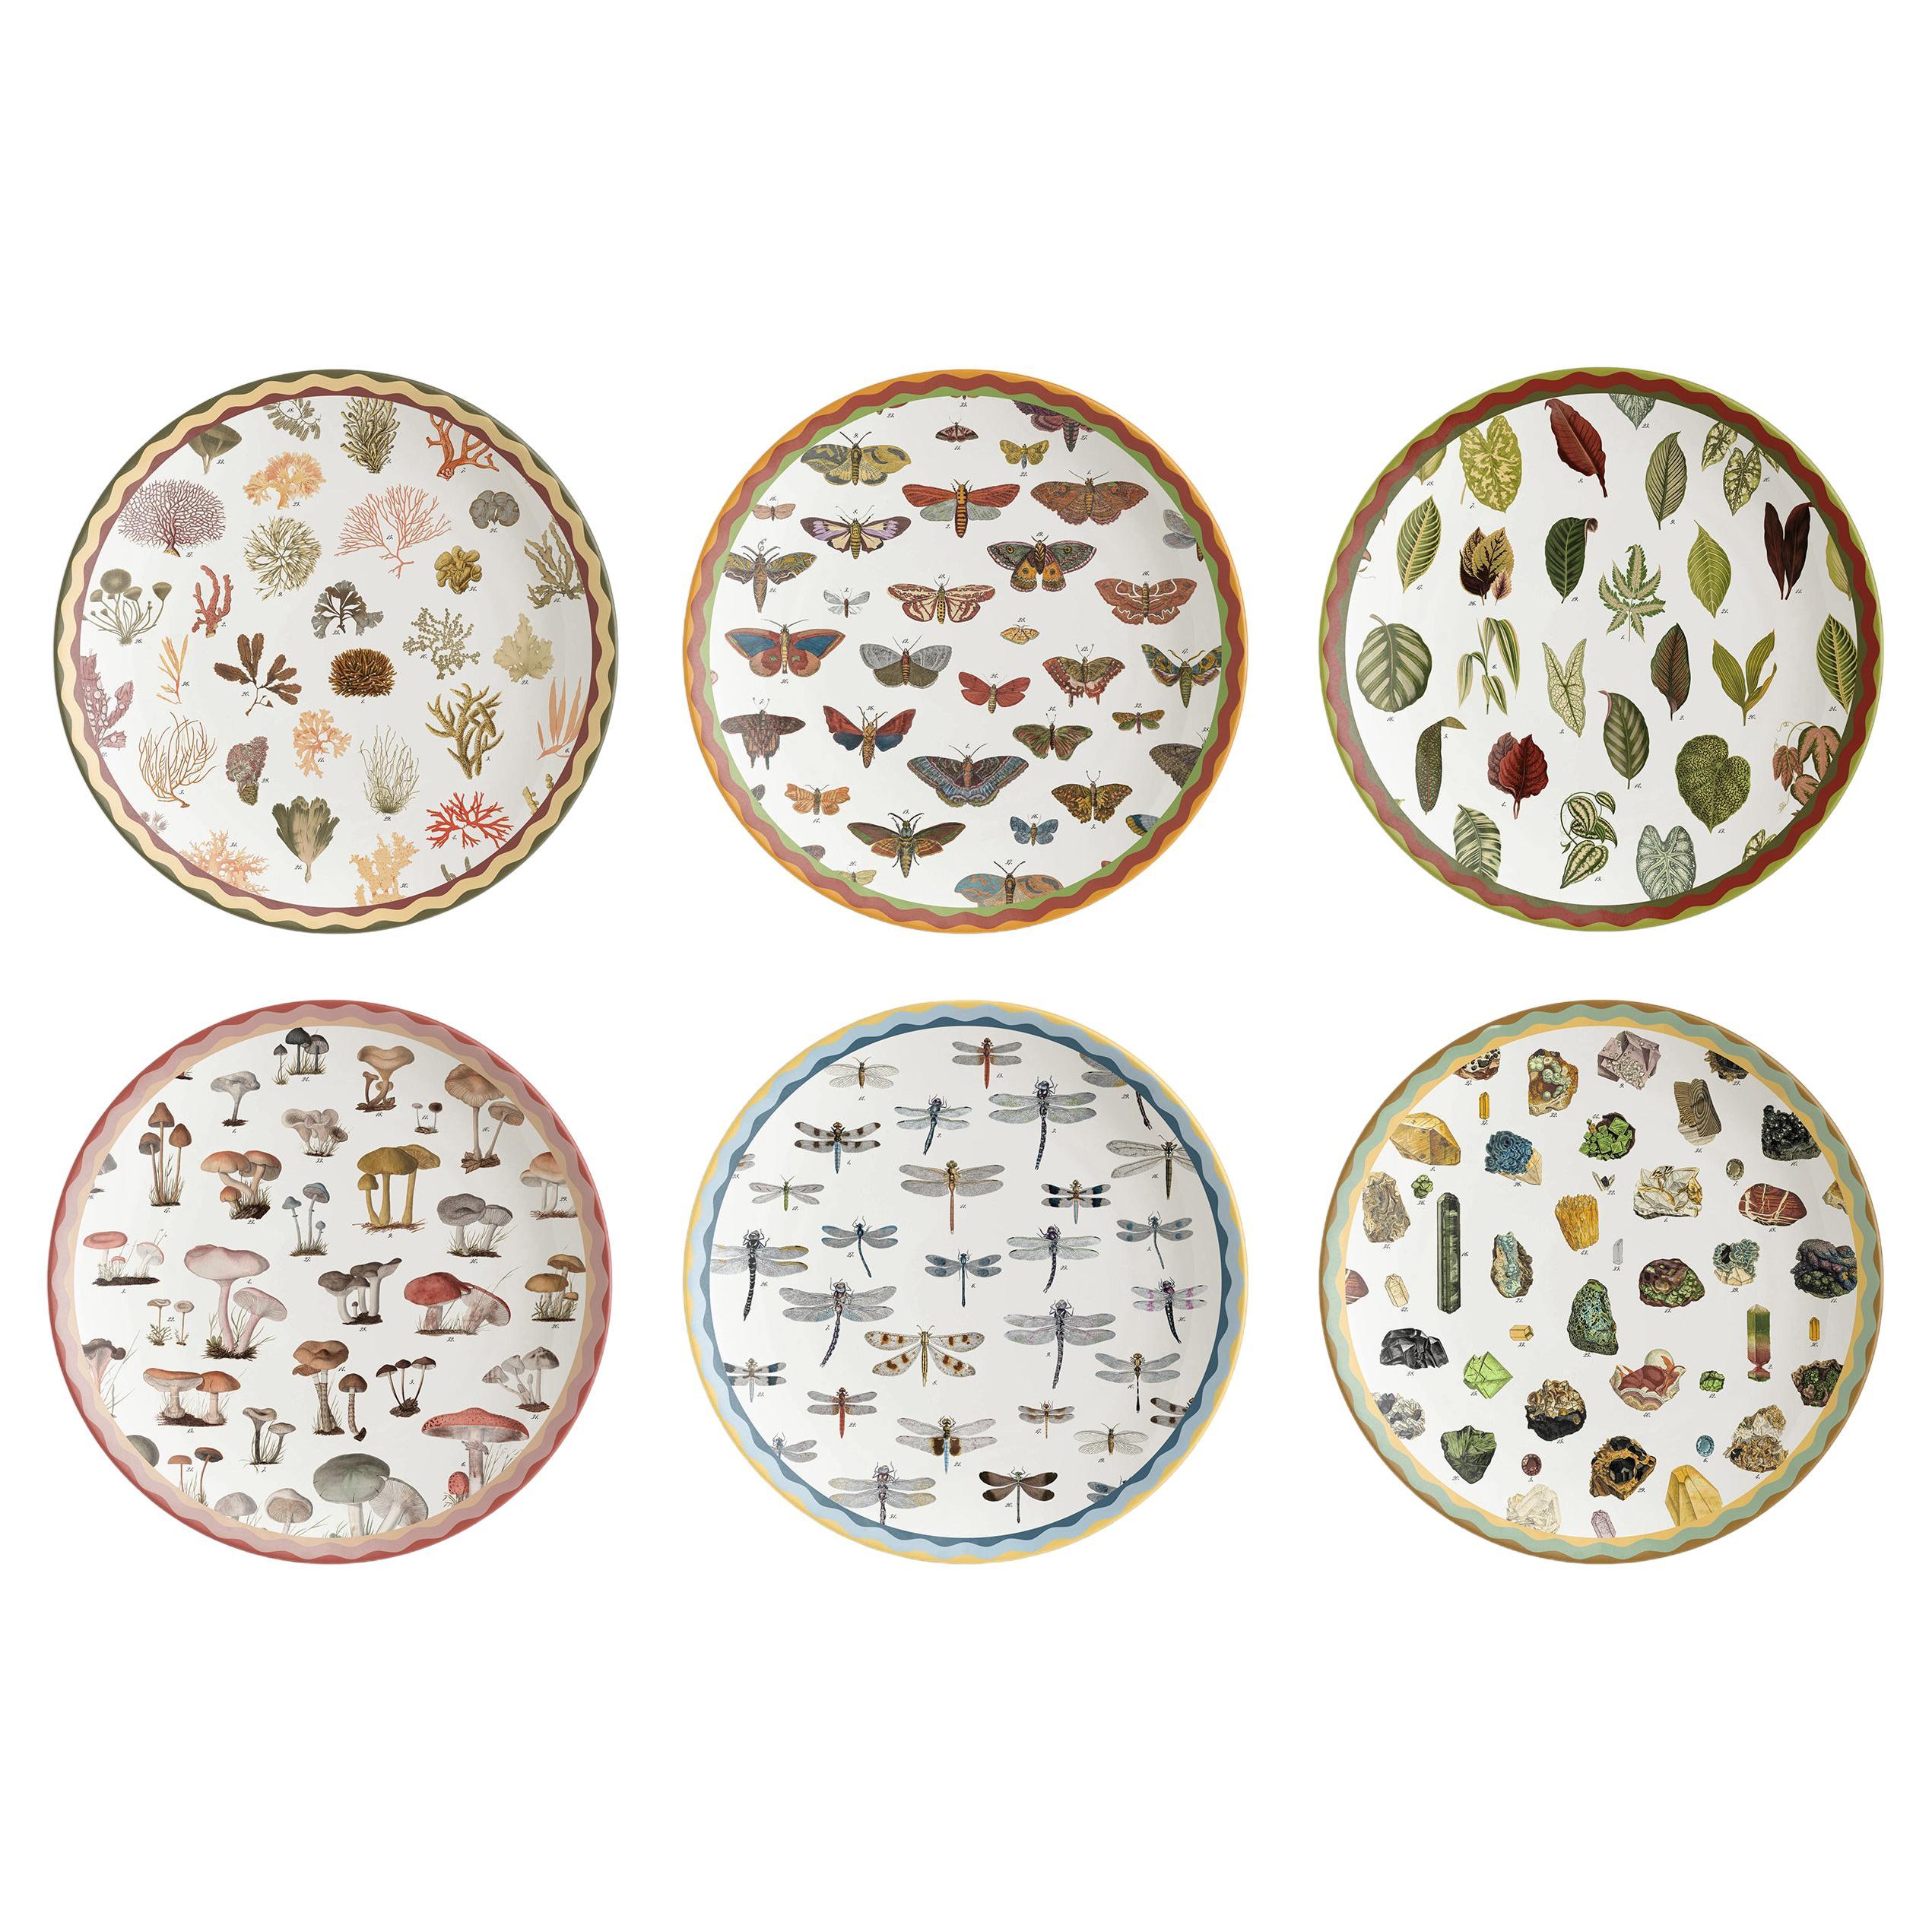 Cabinet de Curiosités, Six Contemporary Decorated Porcelain Platters